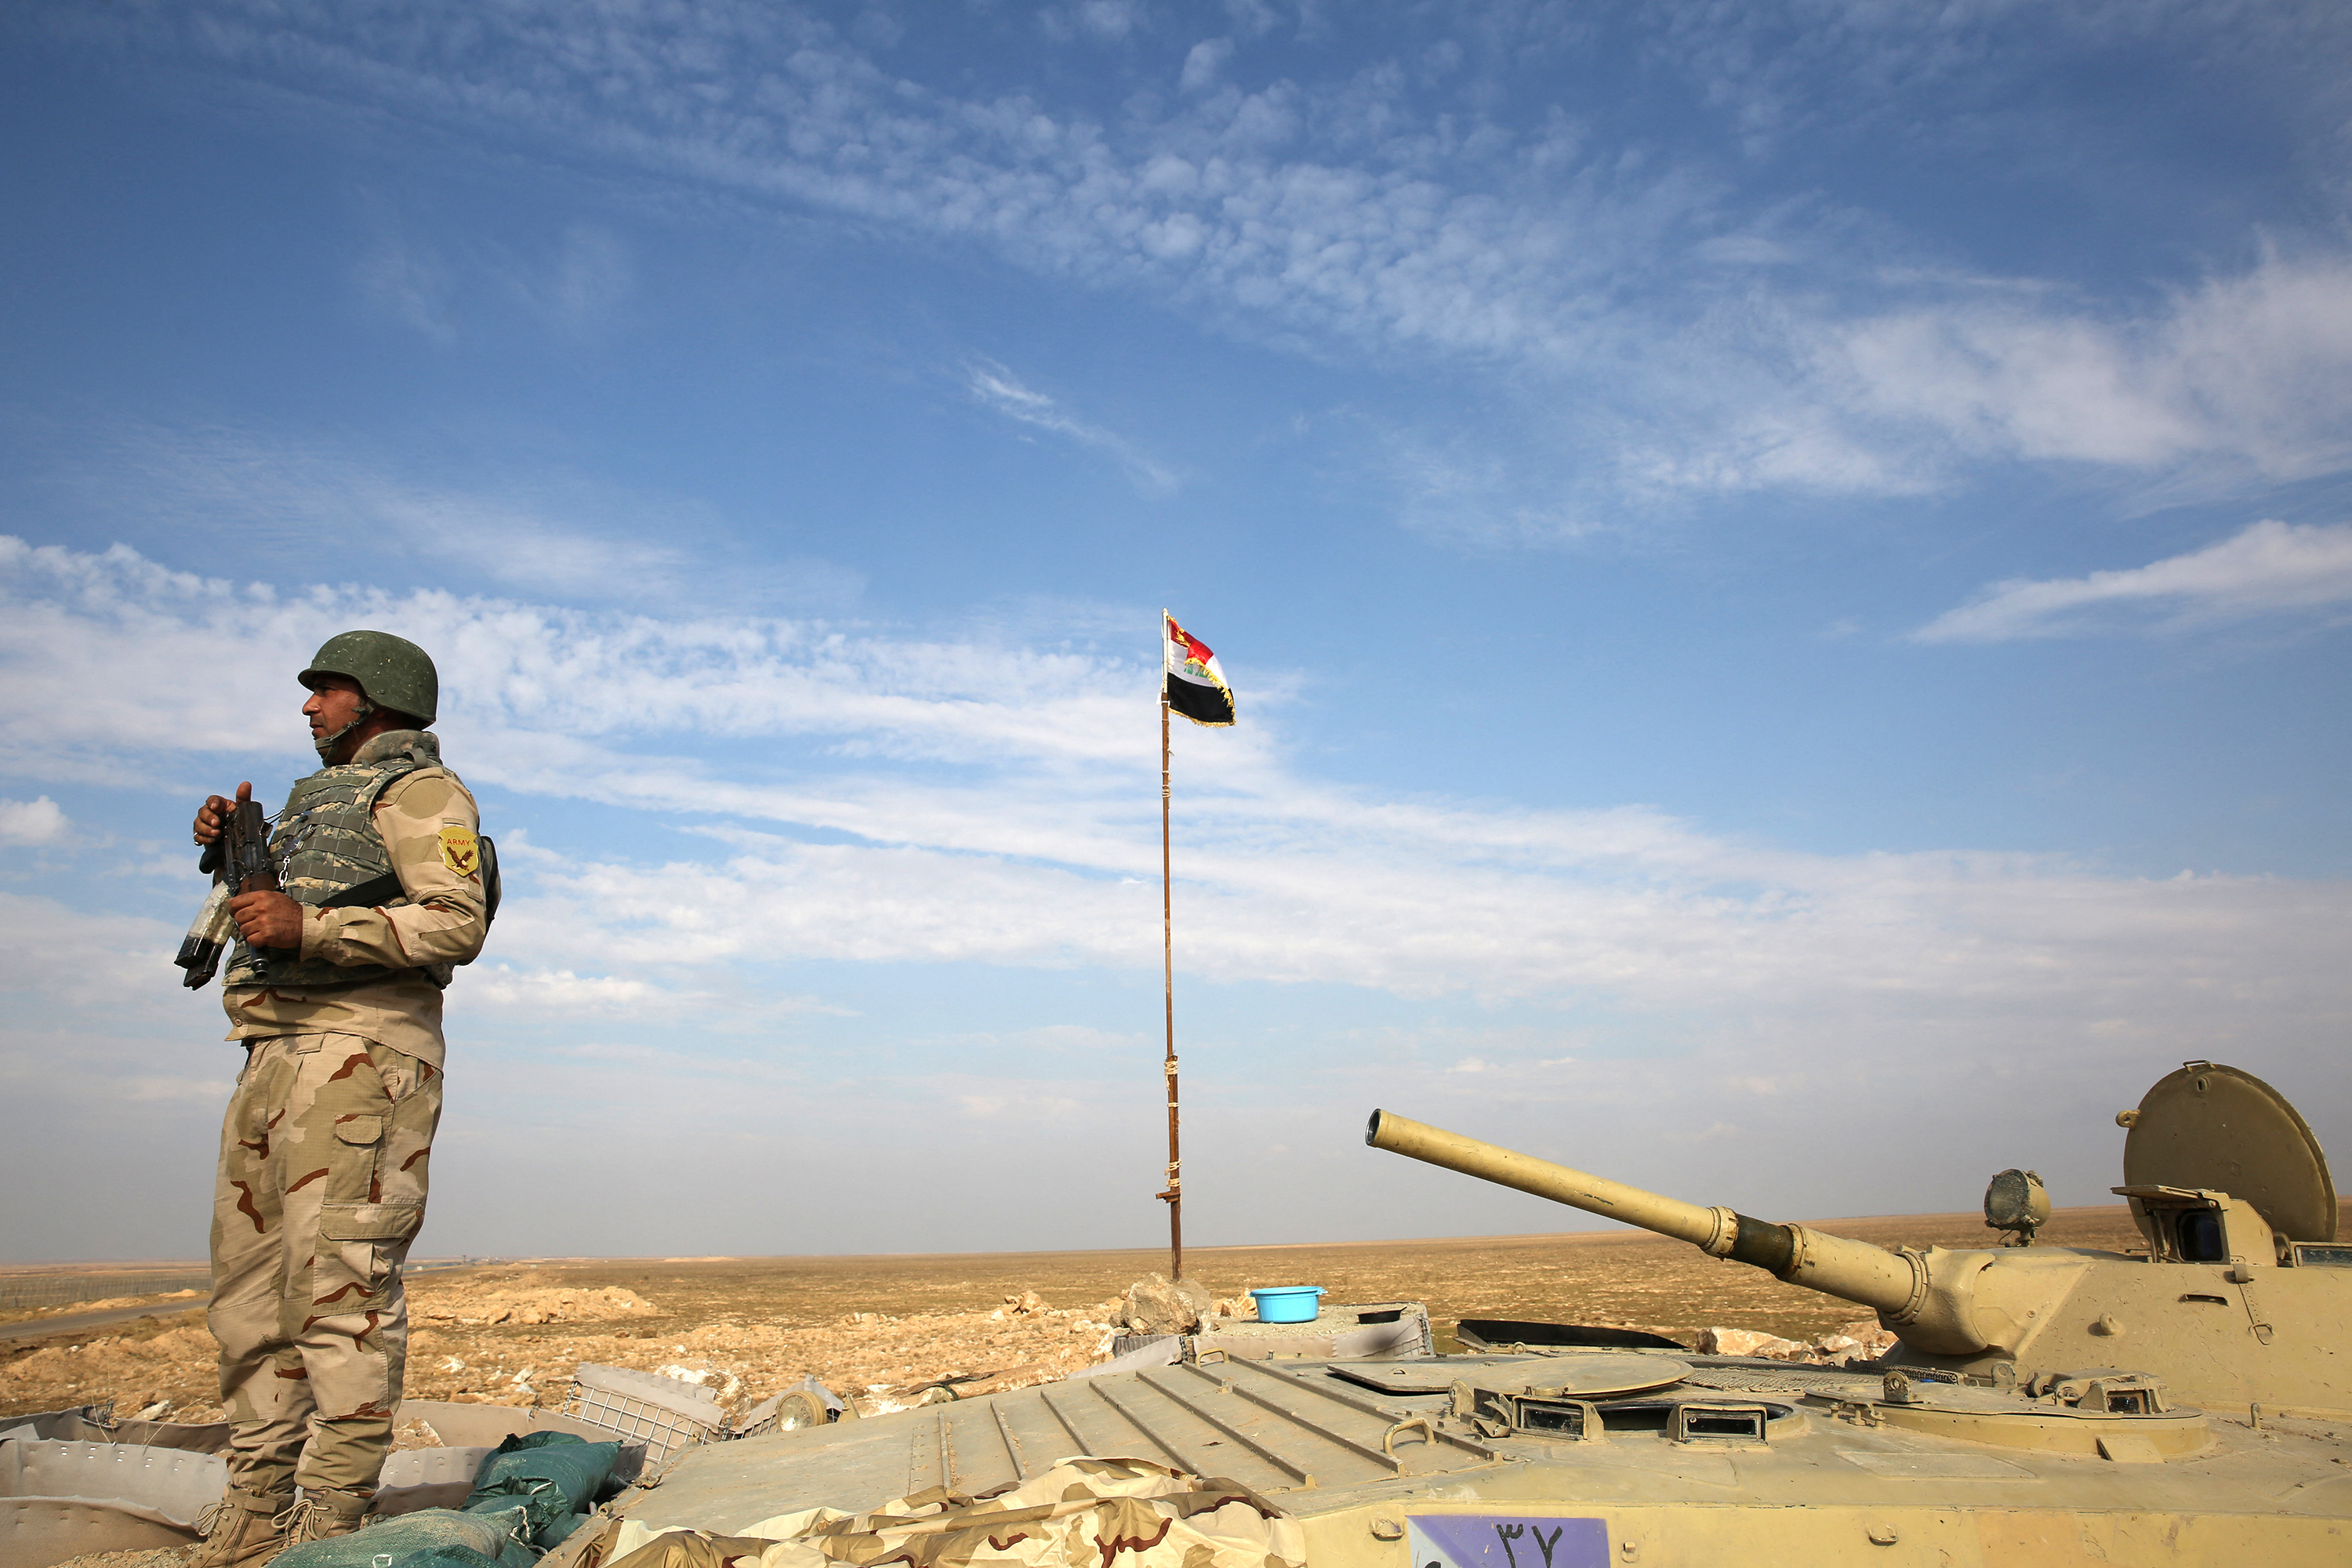 Une base du centre de l'Irak a été touchée par des explosions qui ont fait au moins un mort et plusieurs blessés. (Illustration) AFP/AHMAD AL-RUBAYE